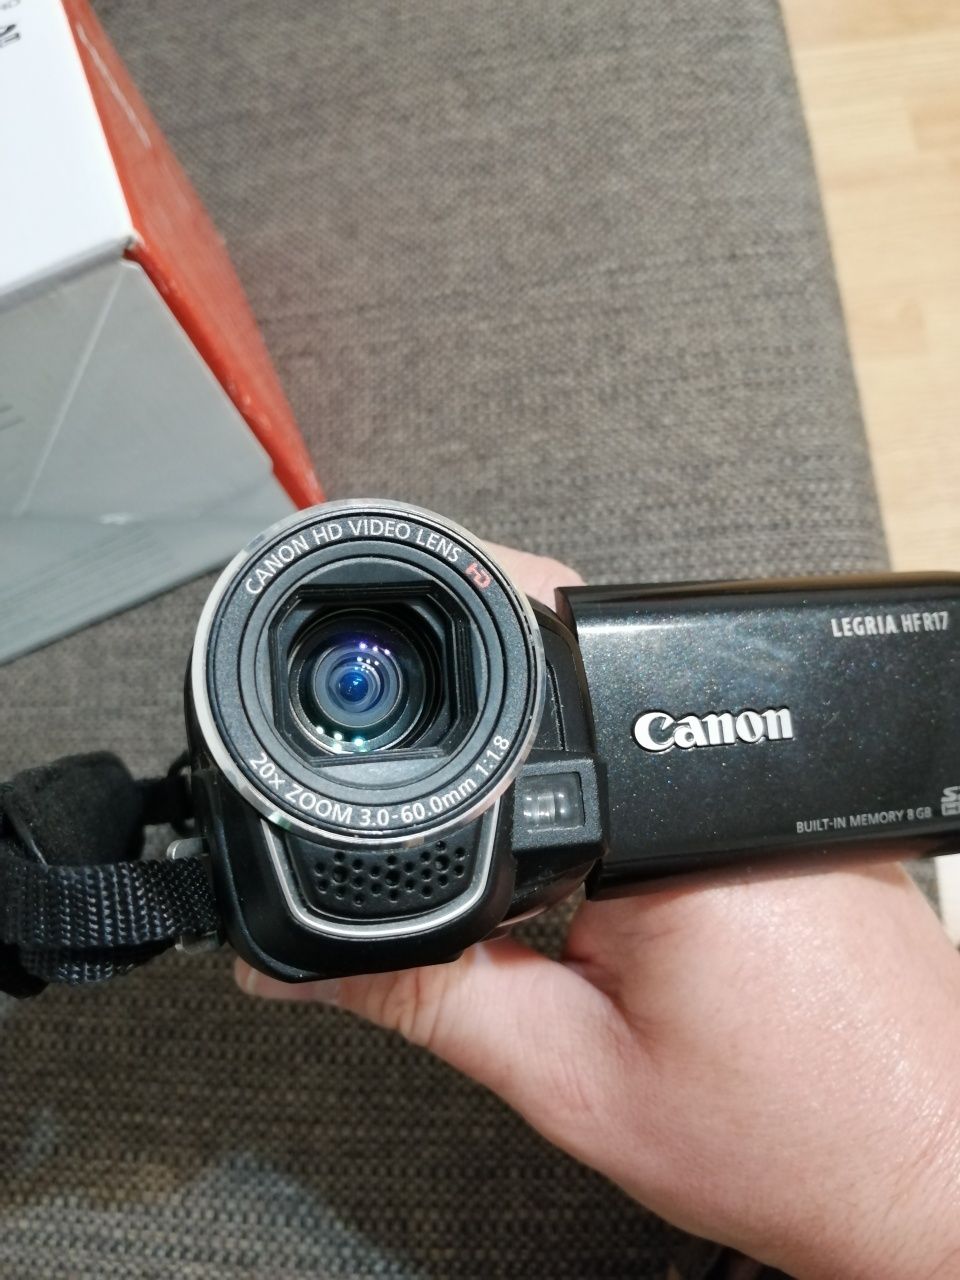 Camera. Canon full hd